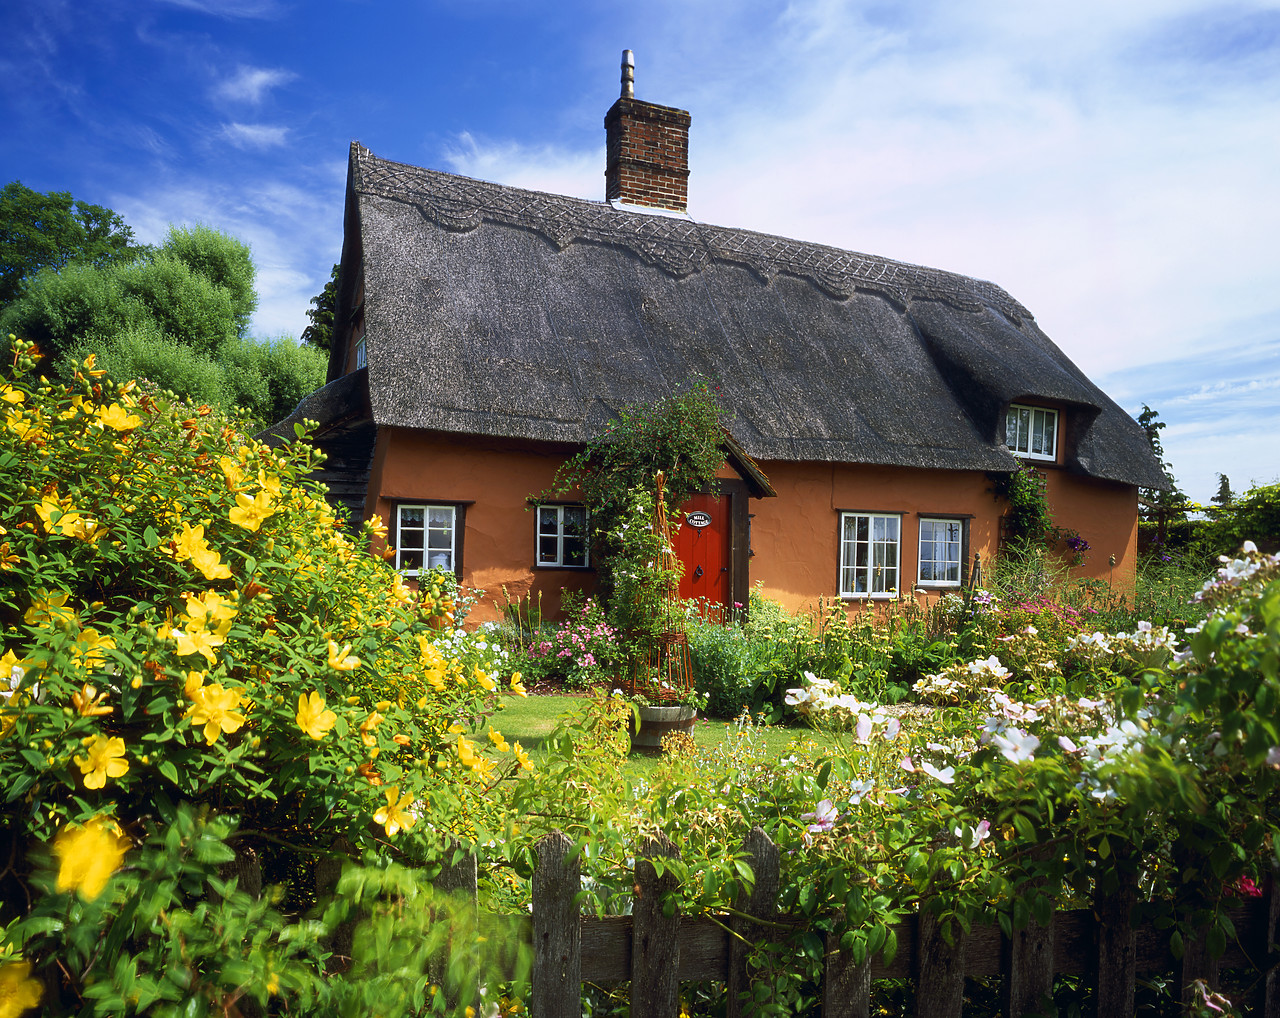 #030135-2 - Thatch Cottage & Garden, Suffolk, England